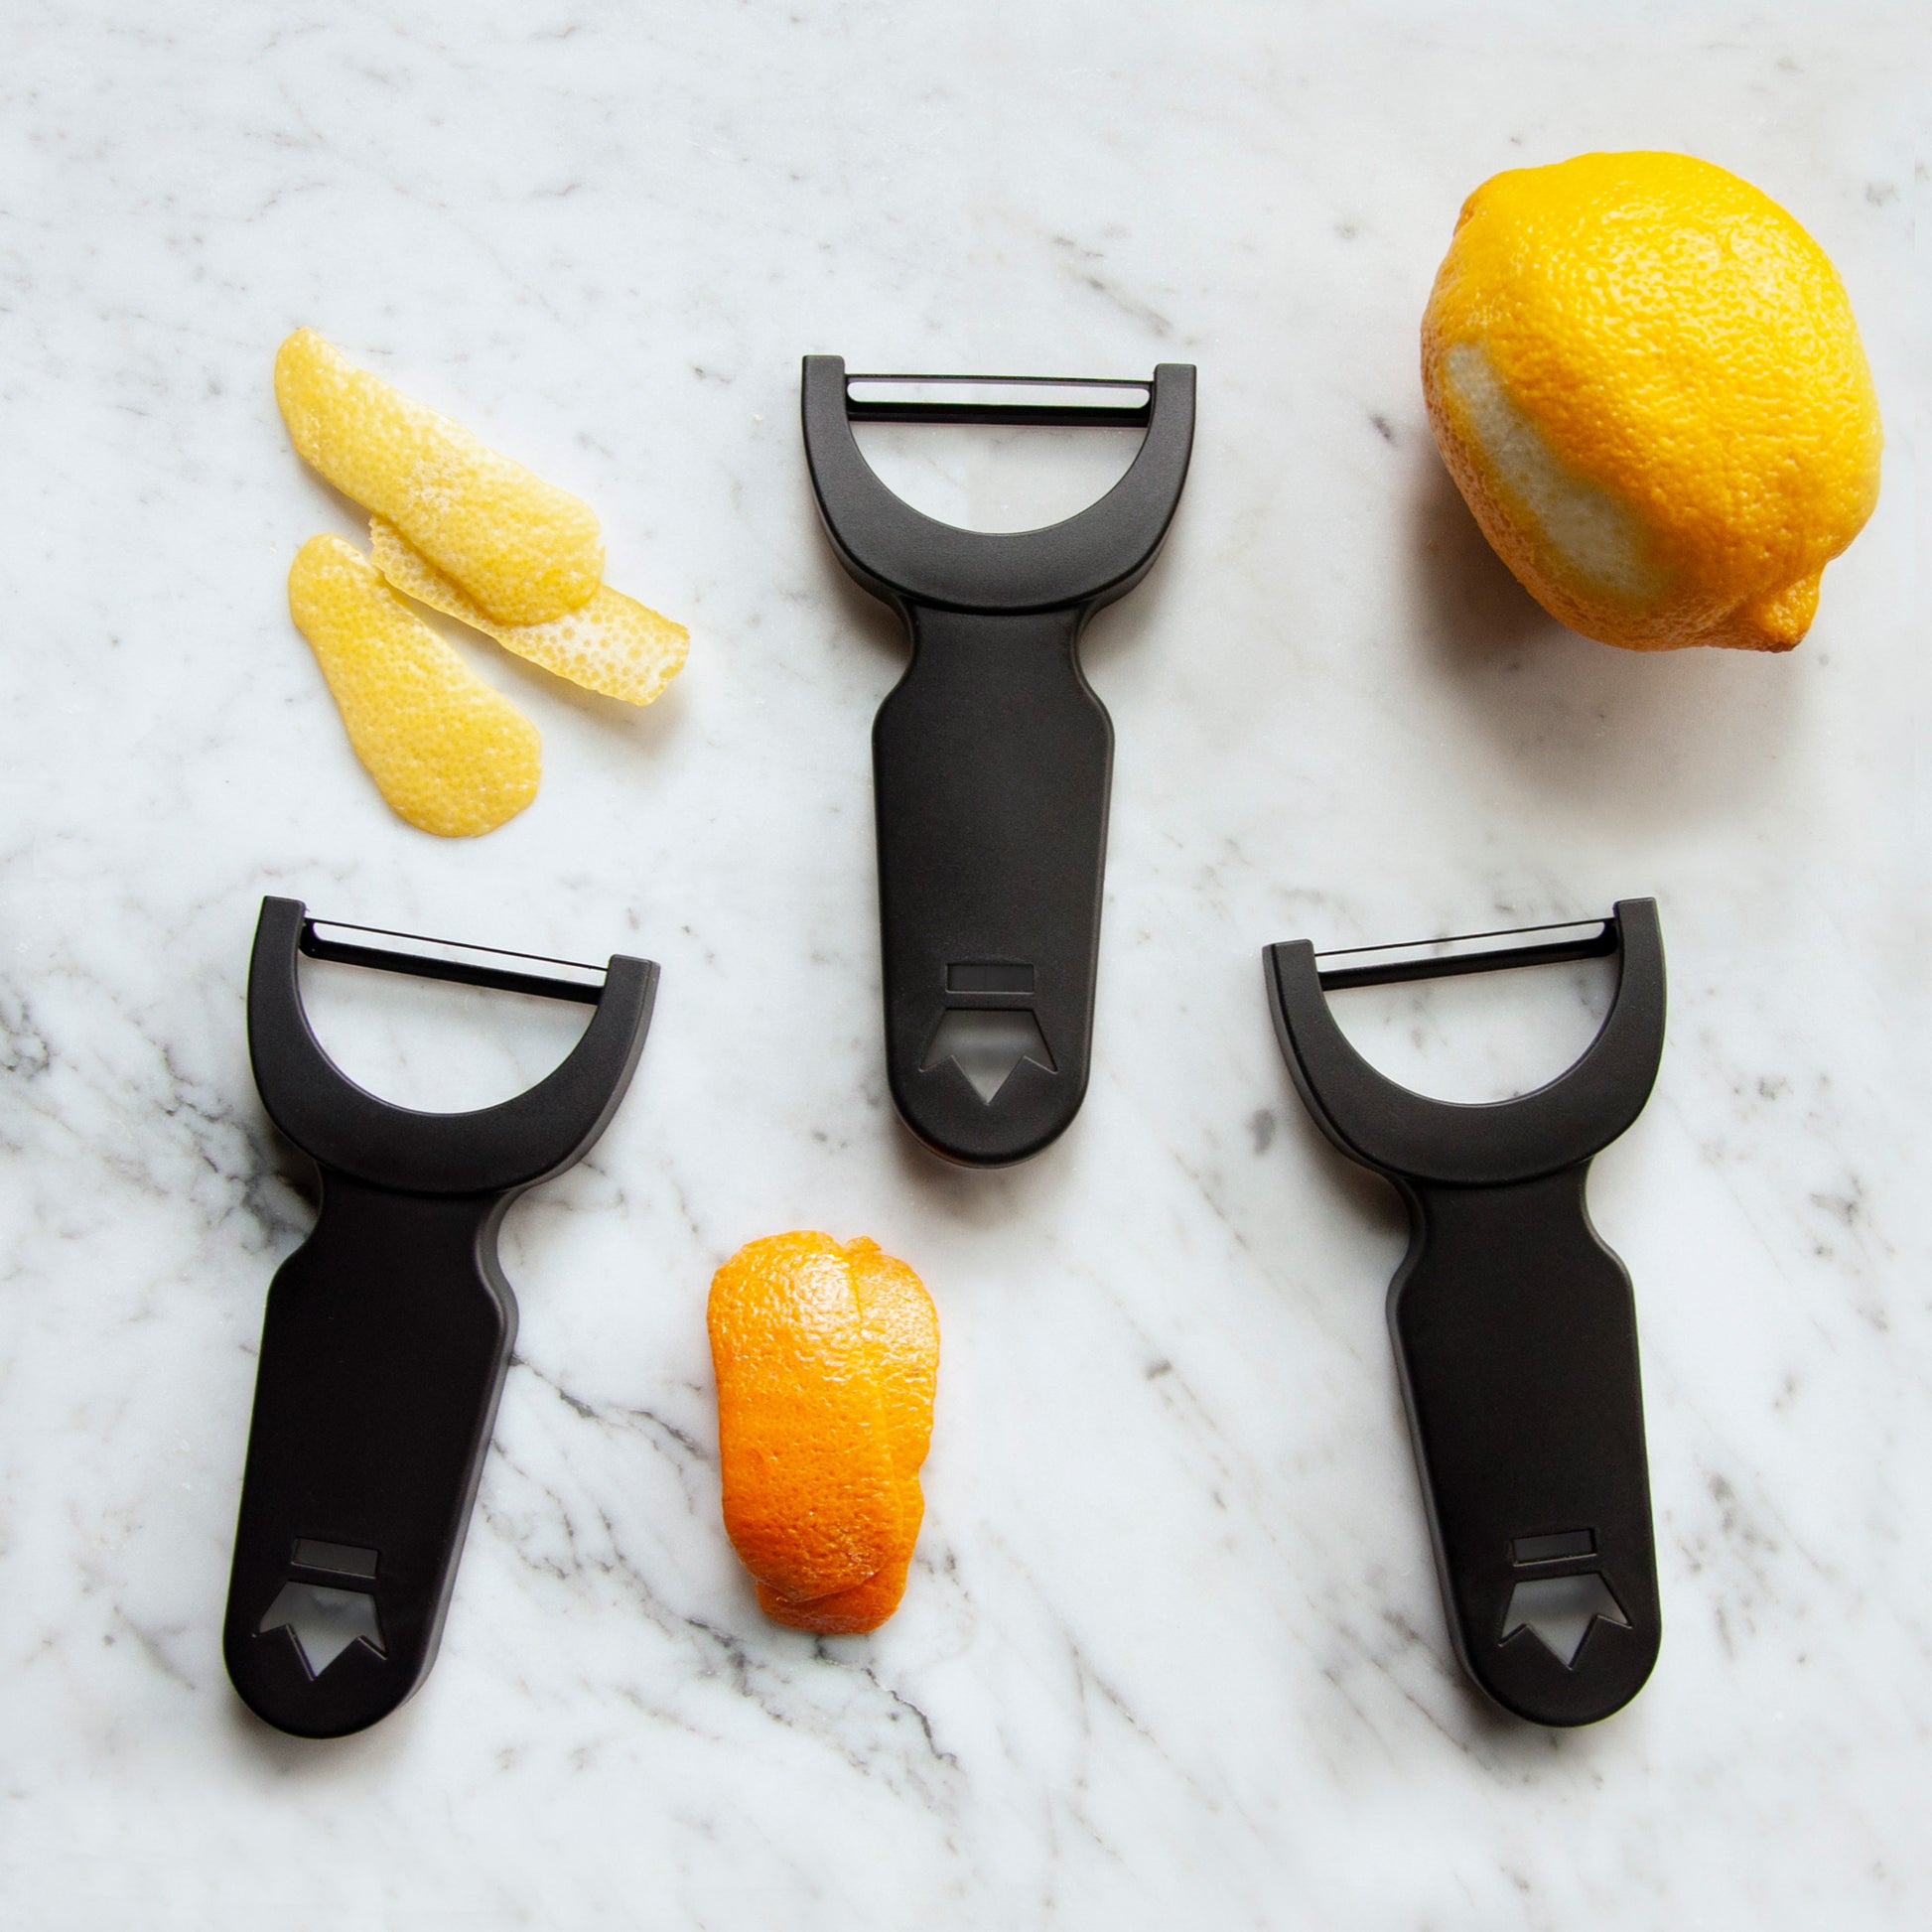 Ruibeauty Lemon Orange Lime Citrus Fruit Zester Peeler Cocktails Kitchen Bar Accessories